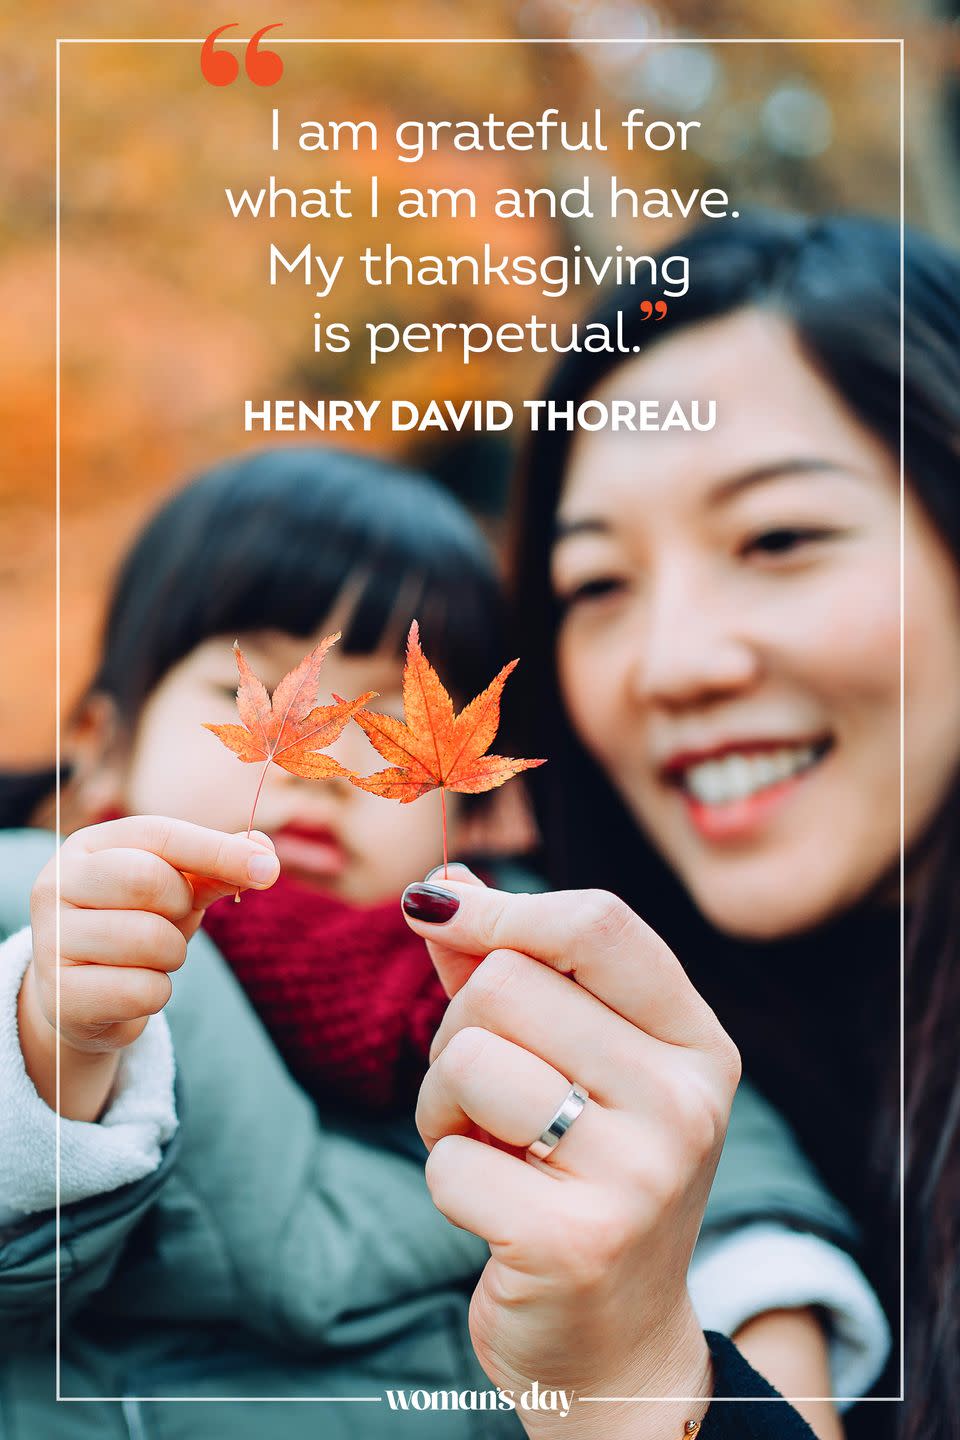 65) Henry David Thoreau